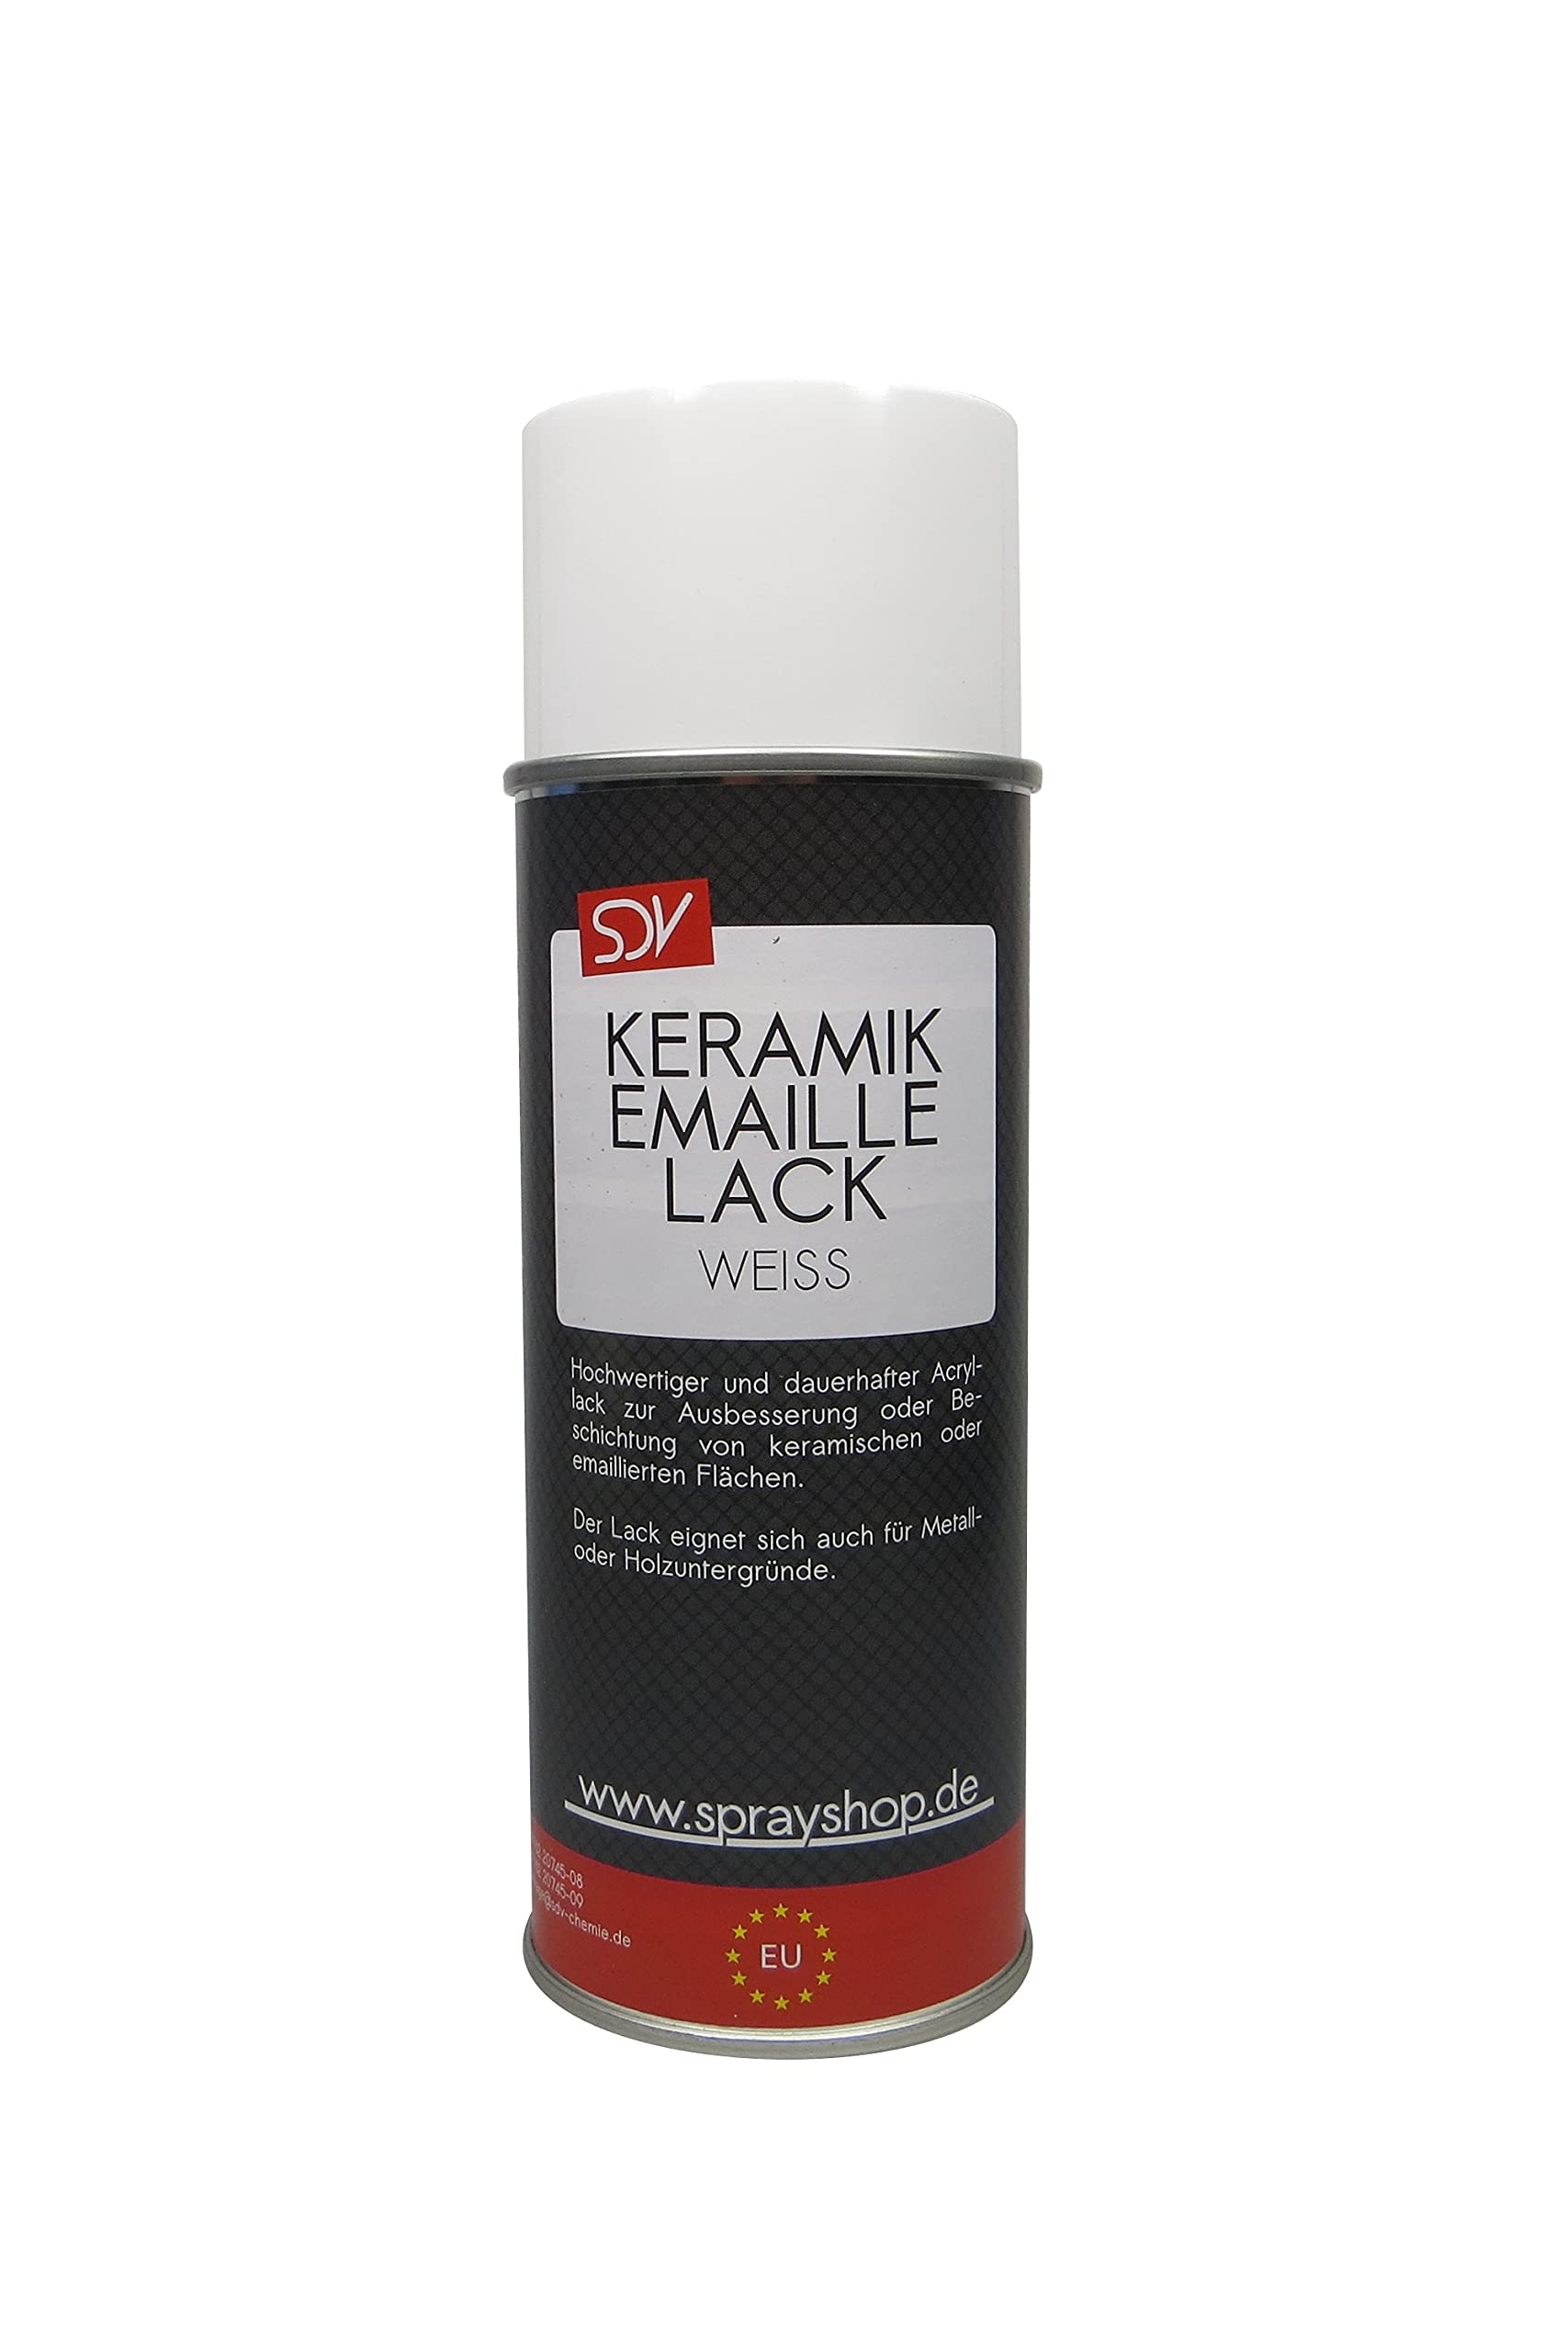 SDV Chemie Keramik Emaille Spray weiß 6x 400ml WC Badewannen Farbe Email Reparatur Lack weiss